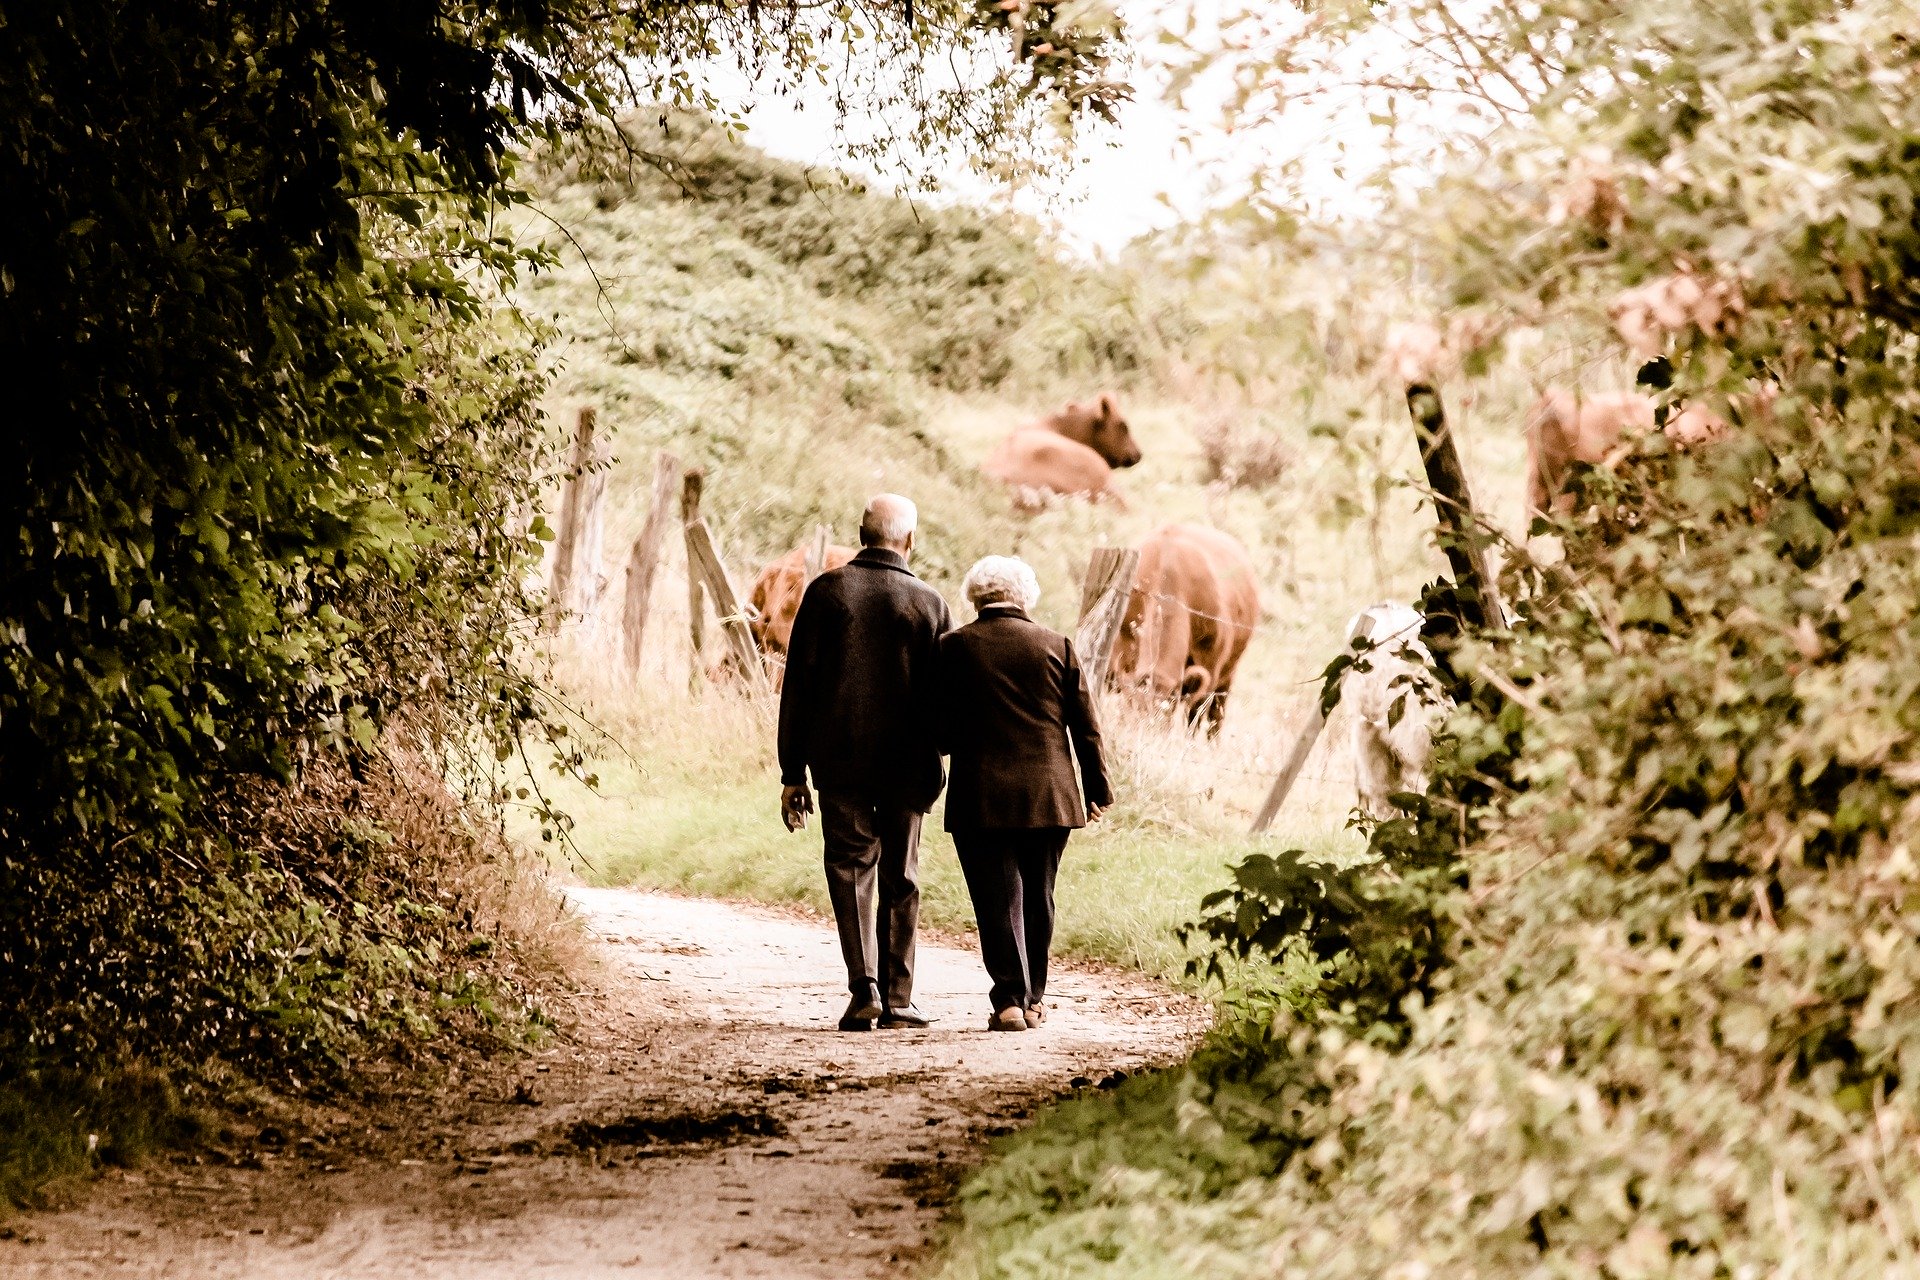 Äldre man och kvinna går på skogsväg. Längre bort skymtar kor i en hage.